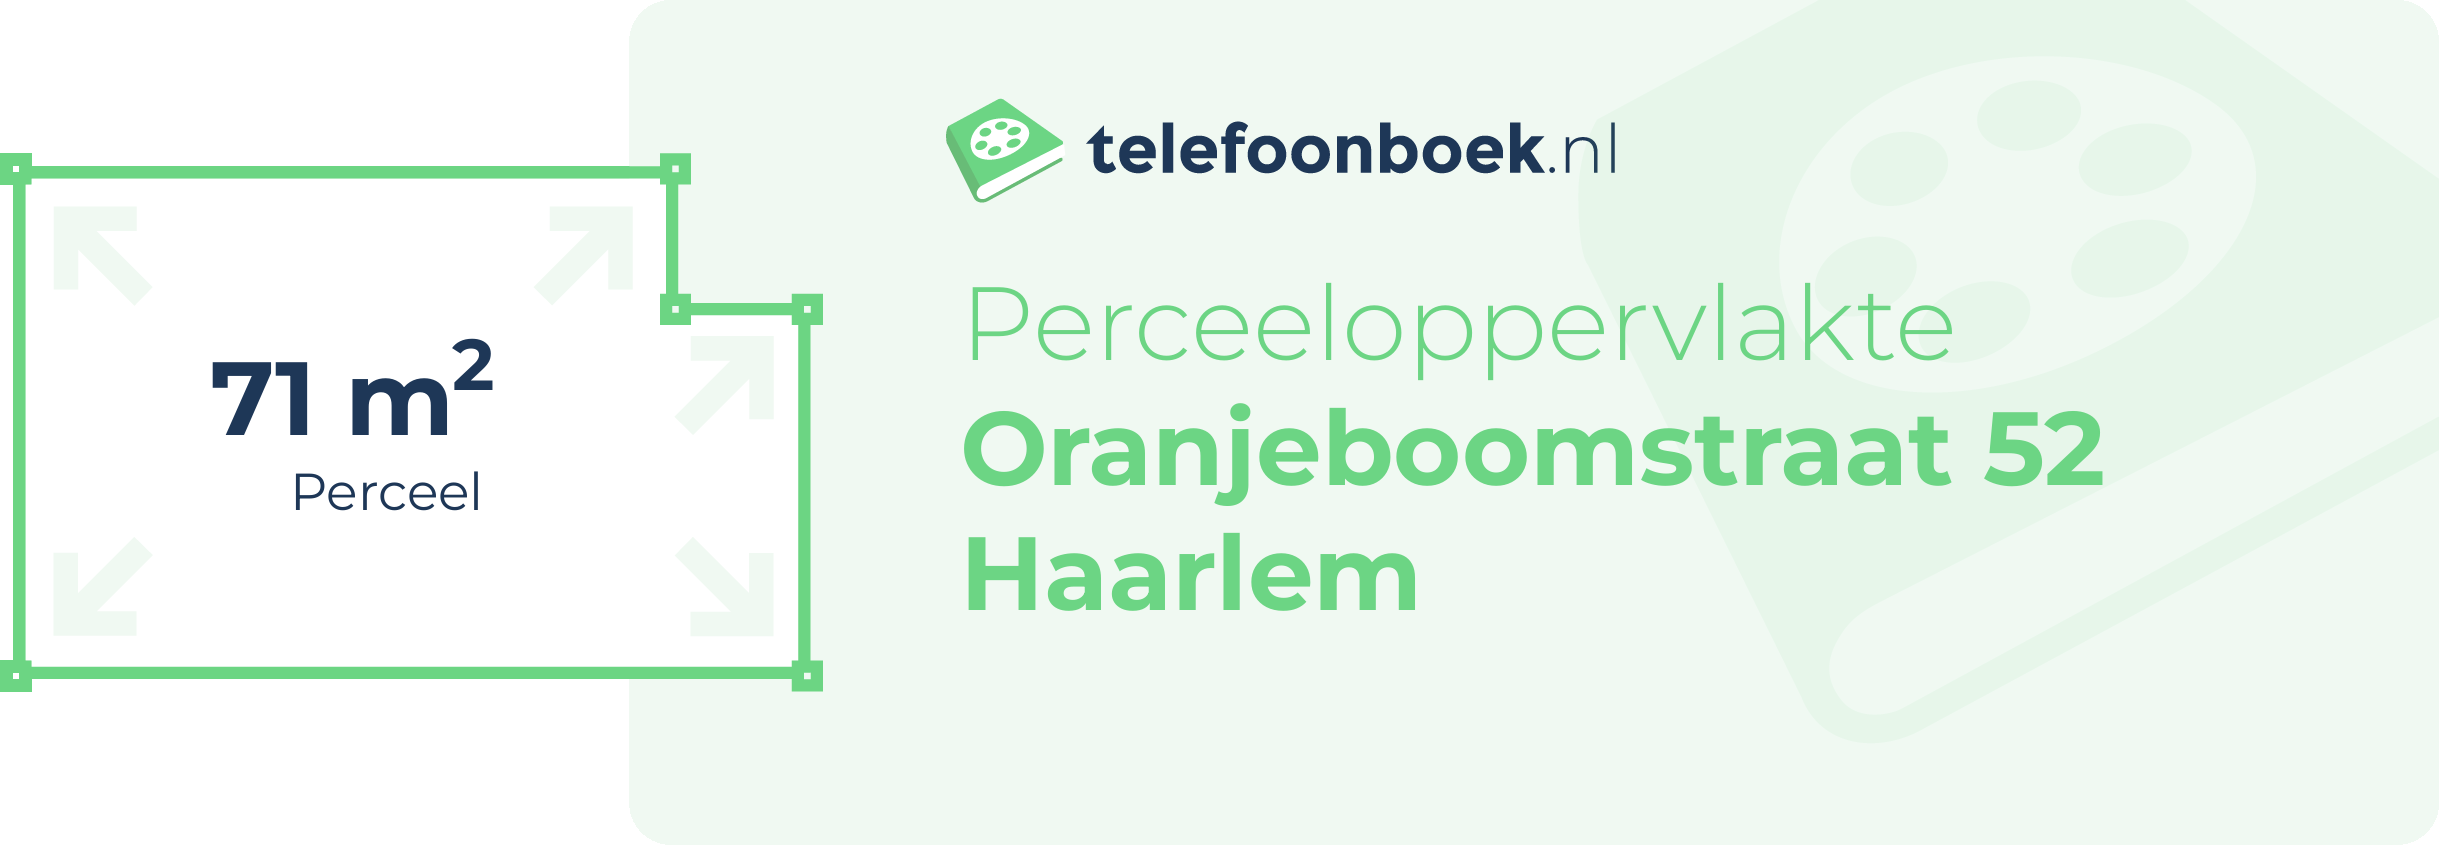 Perceeloppervlakte Oranjeboomstraat 52 Haarlem